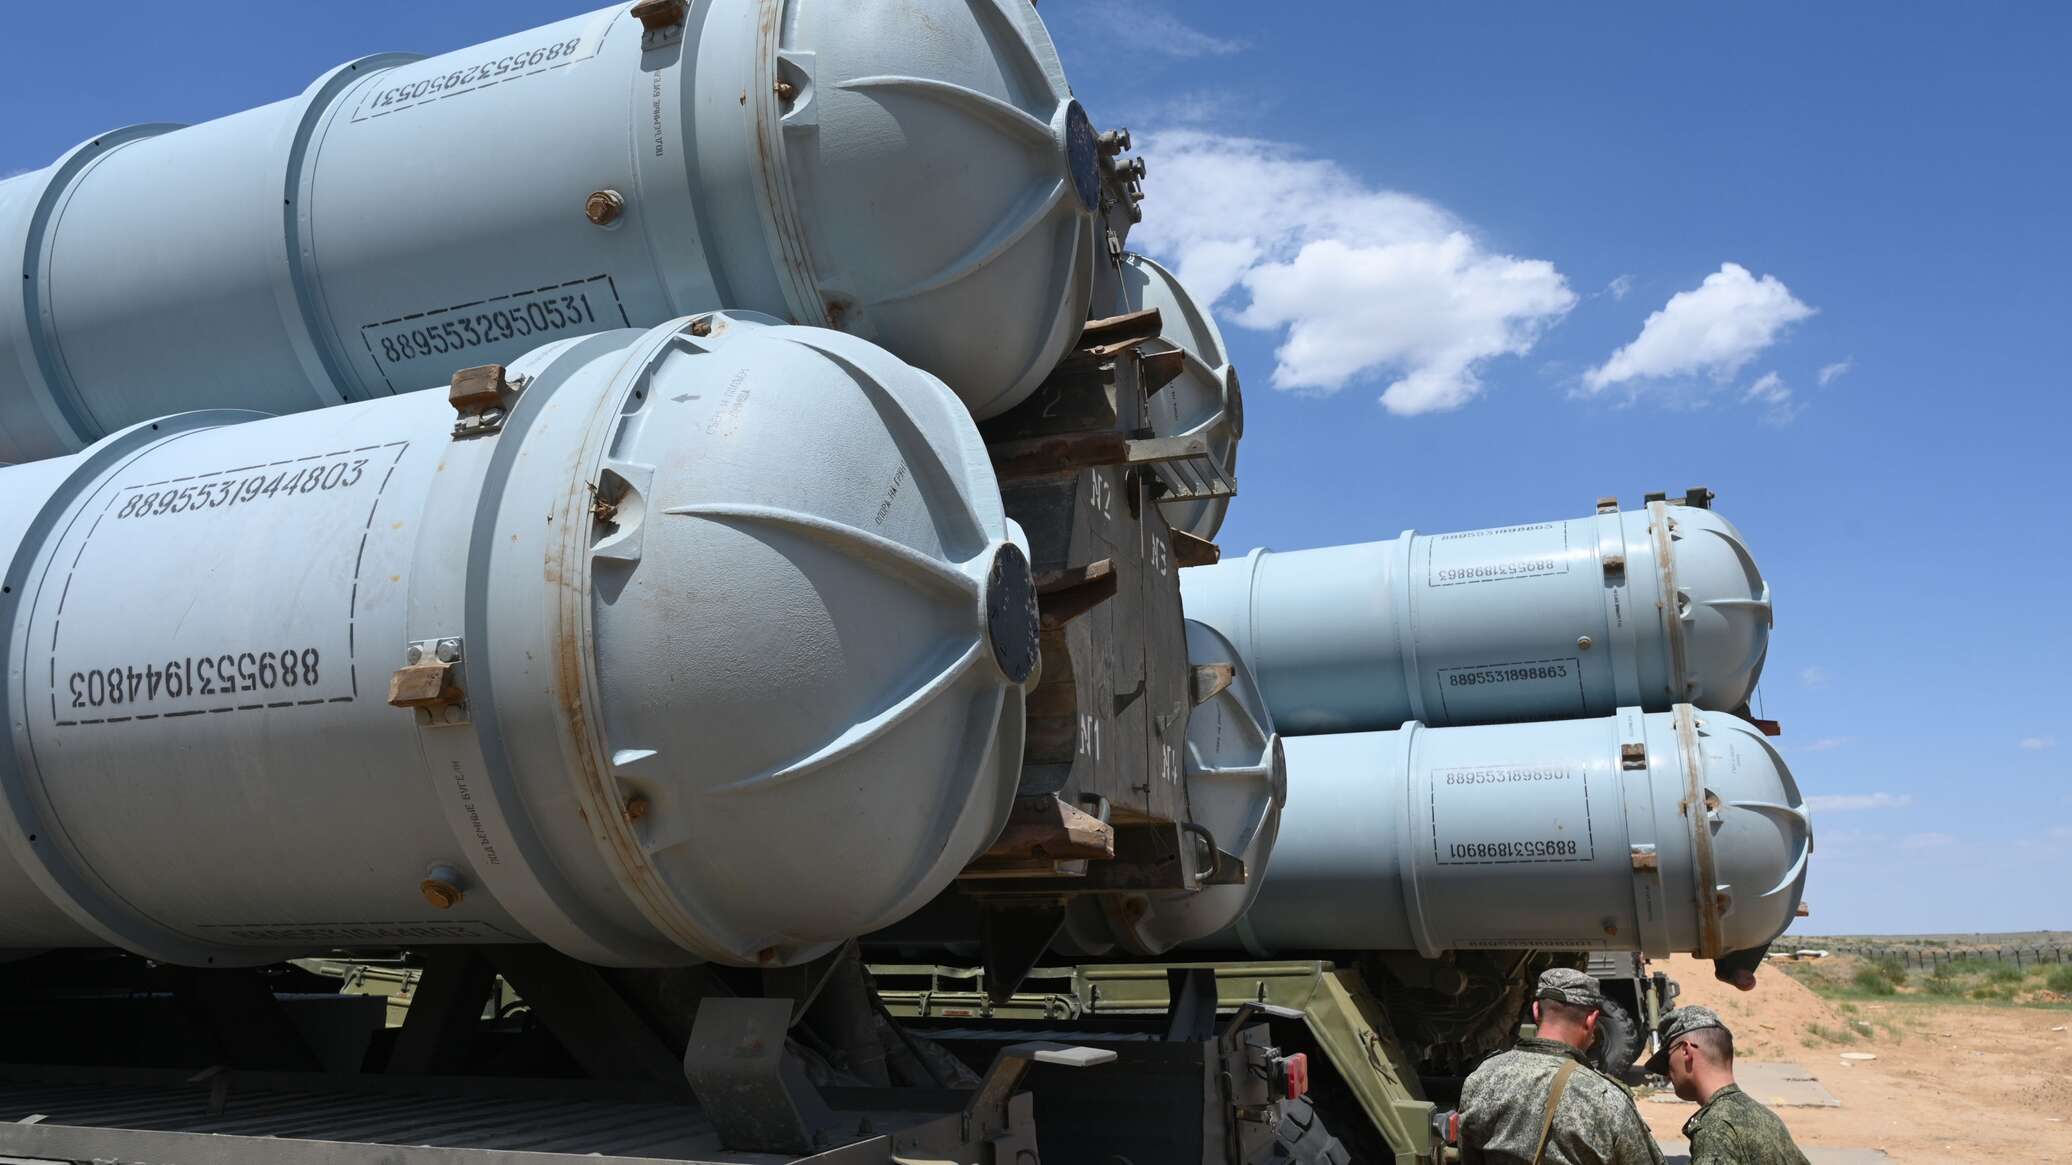 الدفاعات الروسية تدمر صاروخين أوكرانيين من طراز "نبتون" فوق البحر الأسود